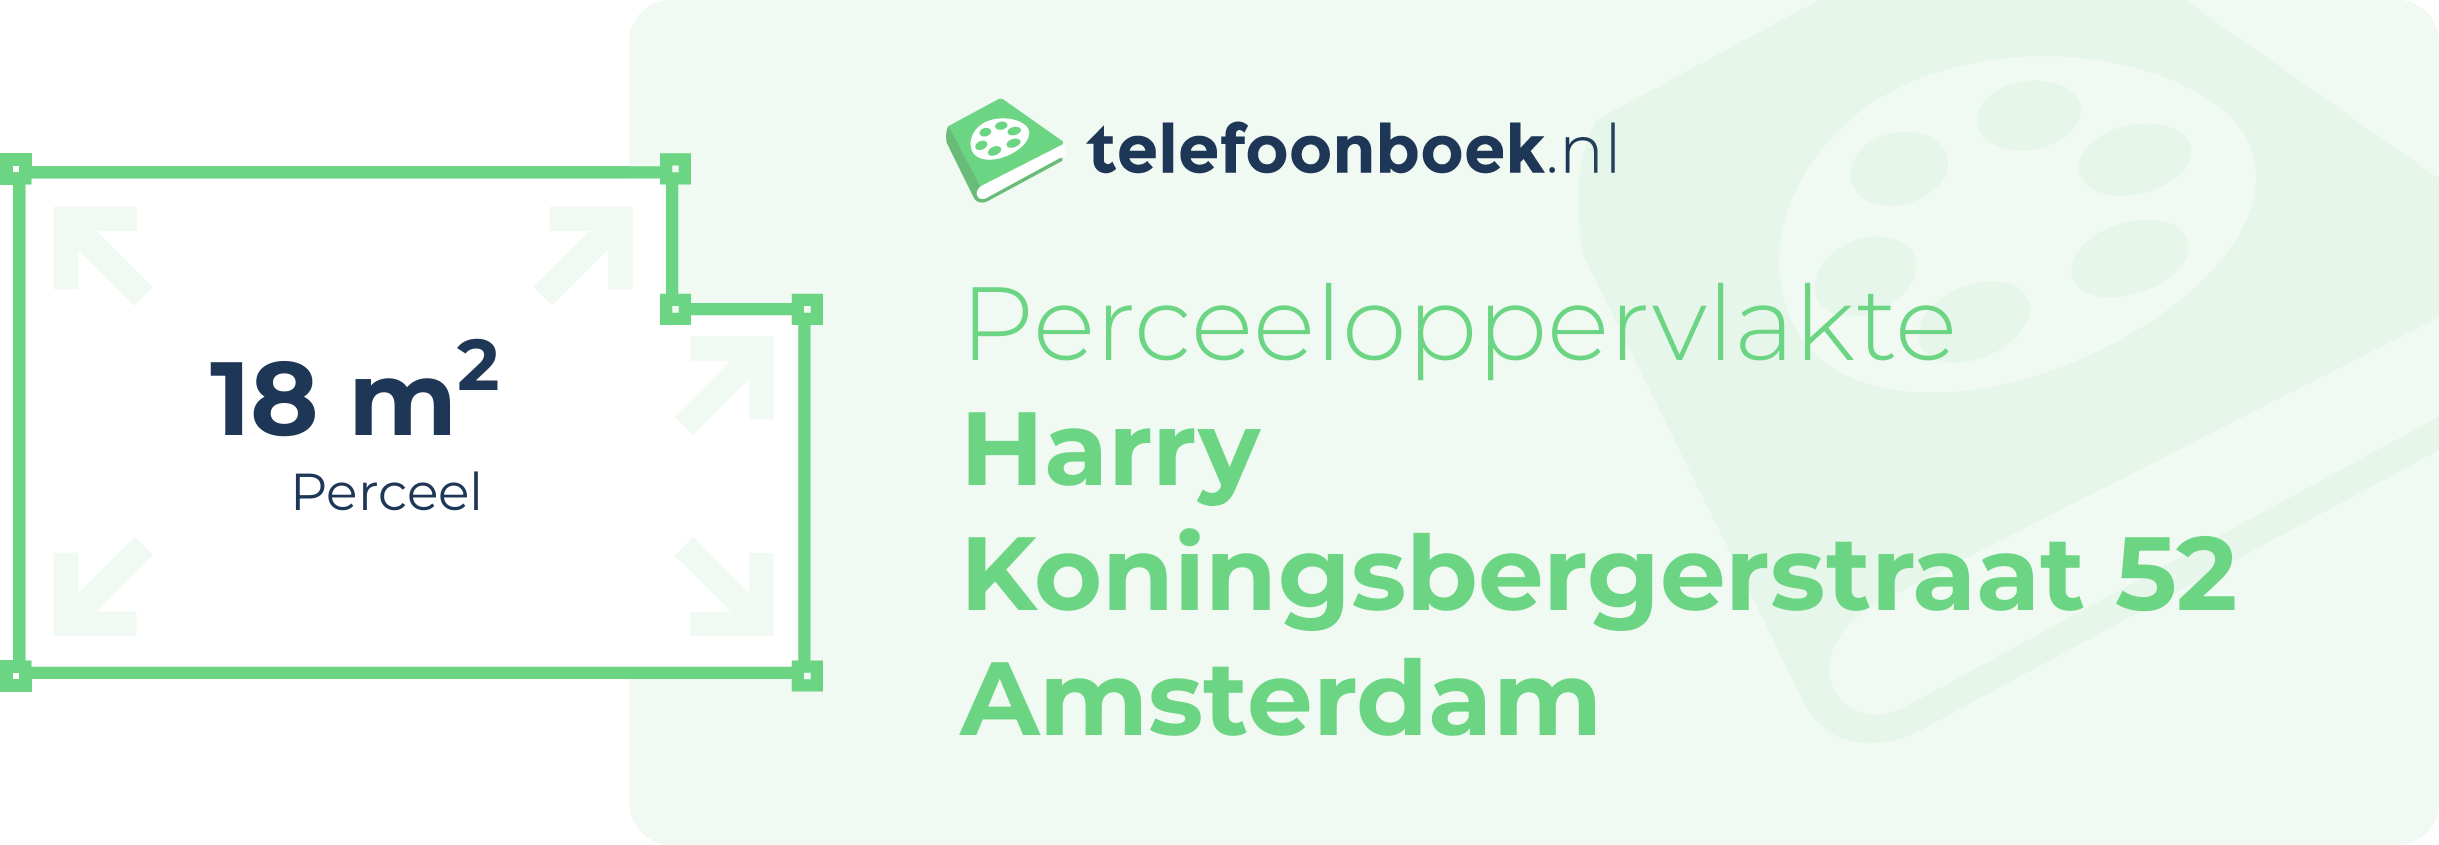 Perceeloppervlakte Harry Koningsbergerstraat 52 Amsterdam